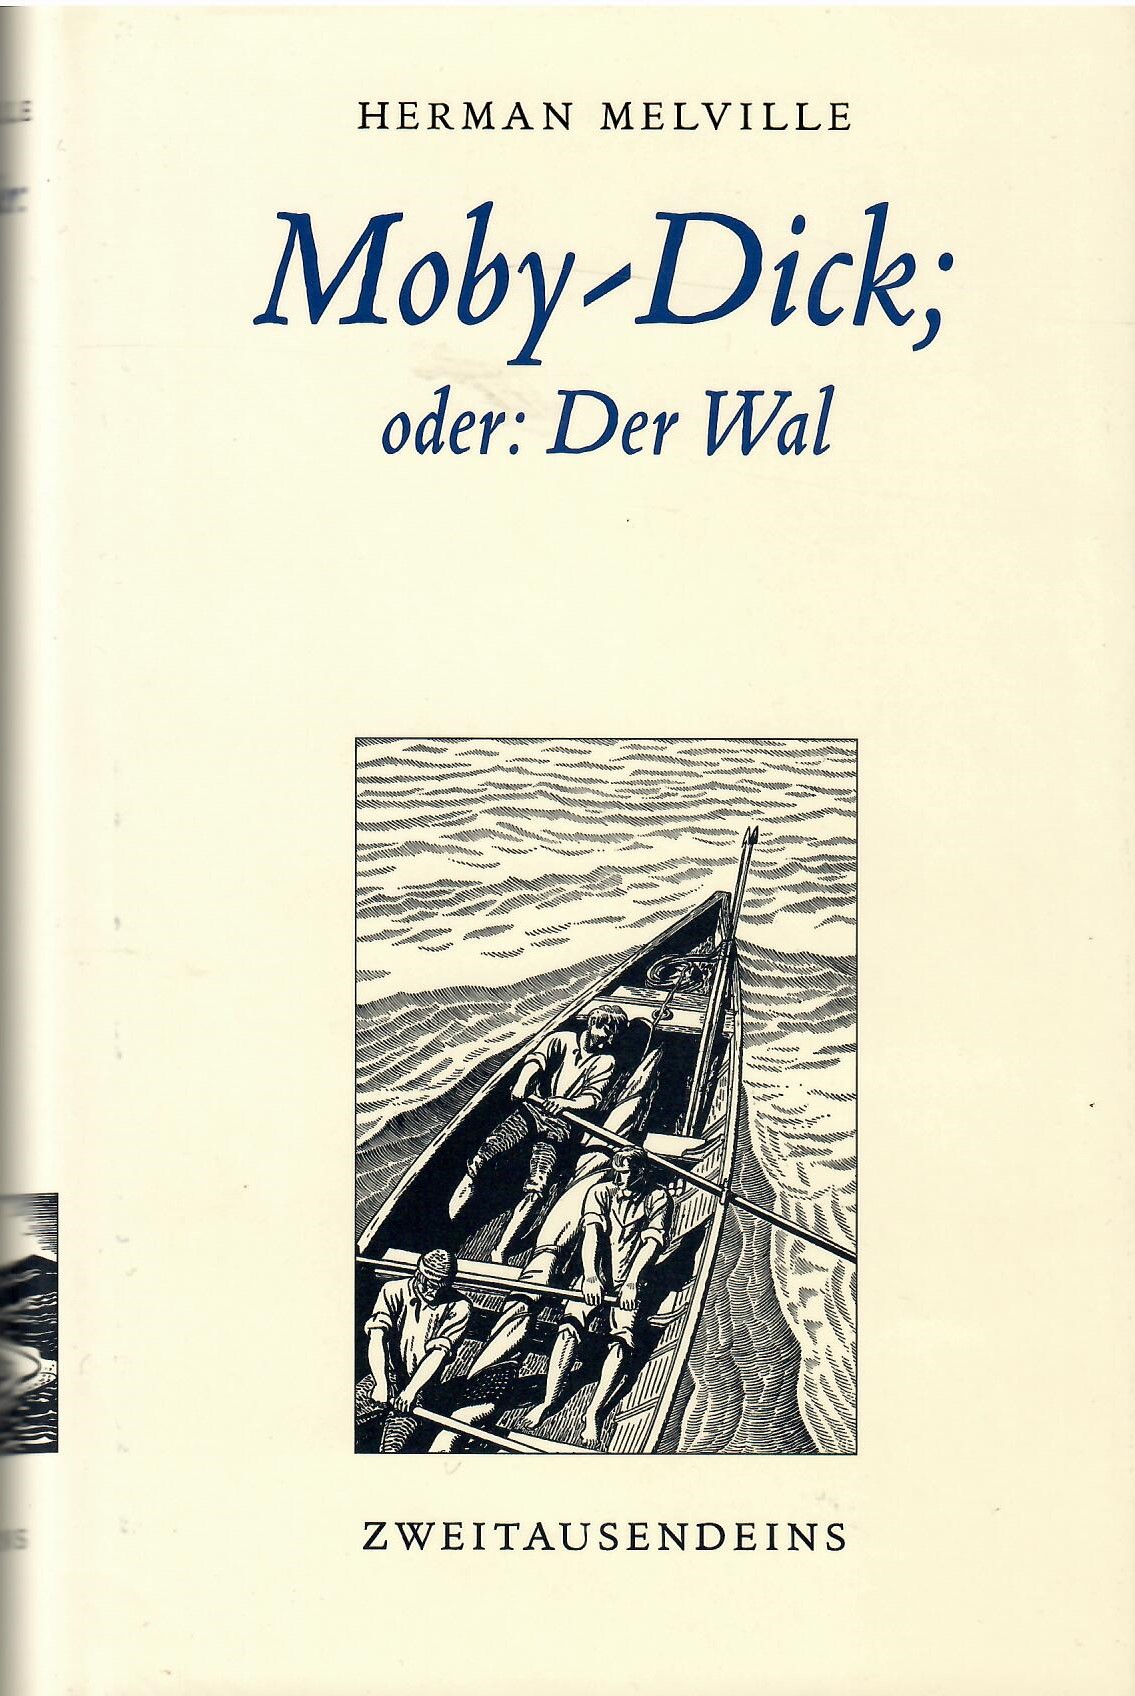 Moby-Dick; oder: Der Wal. Deutsch von Friedhelm Ratjen, Mit 269 Illustrationen von Rockwell Kent. Herausgegeben von Norbert Wehr. Im Anhang ein Essay von Jean-Pierre Lefebre über 